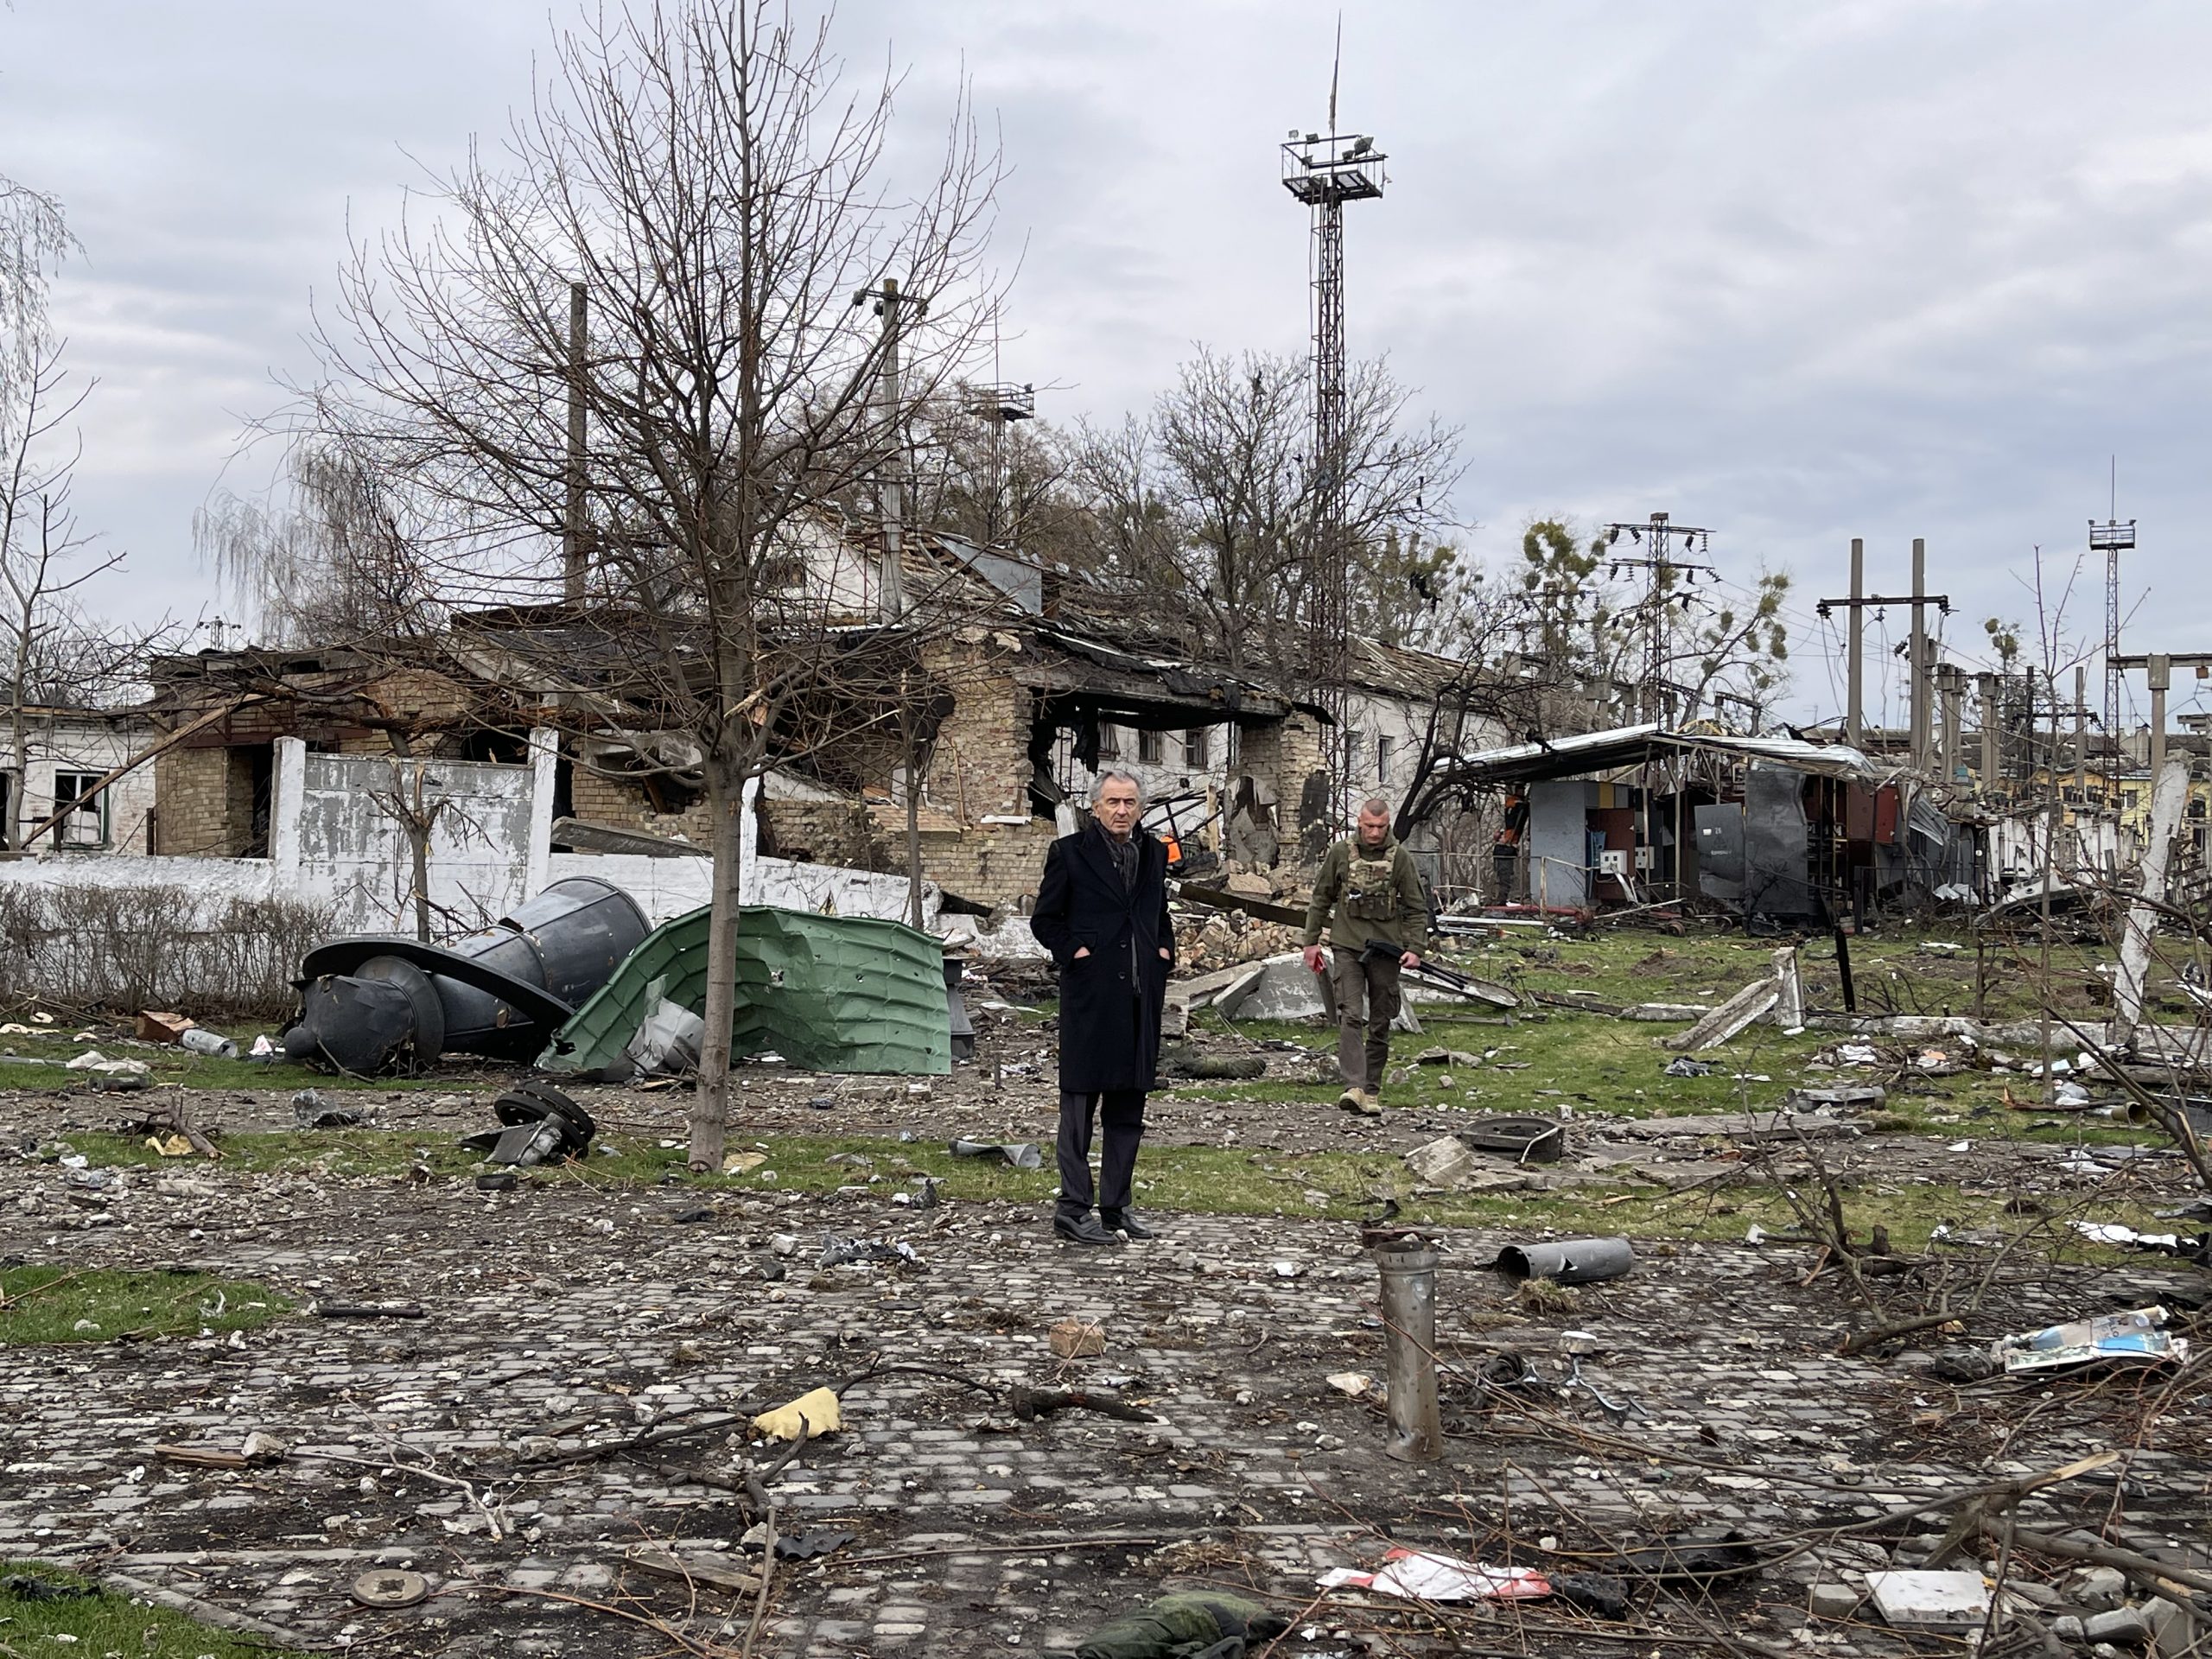 Bernard-Henri Lévy au milieu des ruines de Boradyanka en Ukraine. Des débris jonchent le sol, une maison a brûlée suite à une explosion.